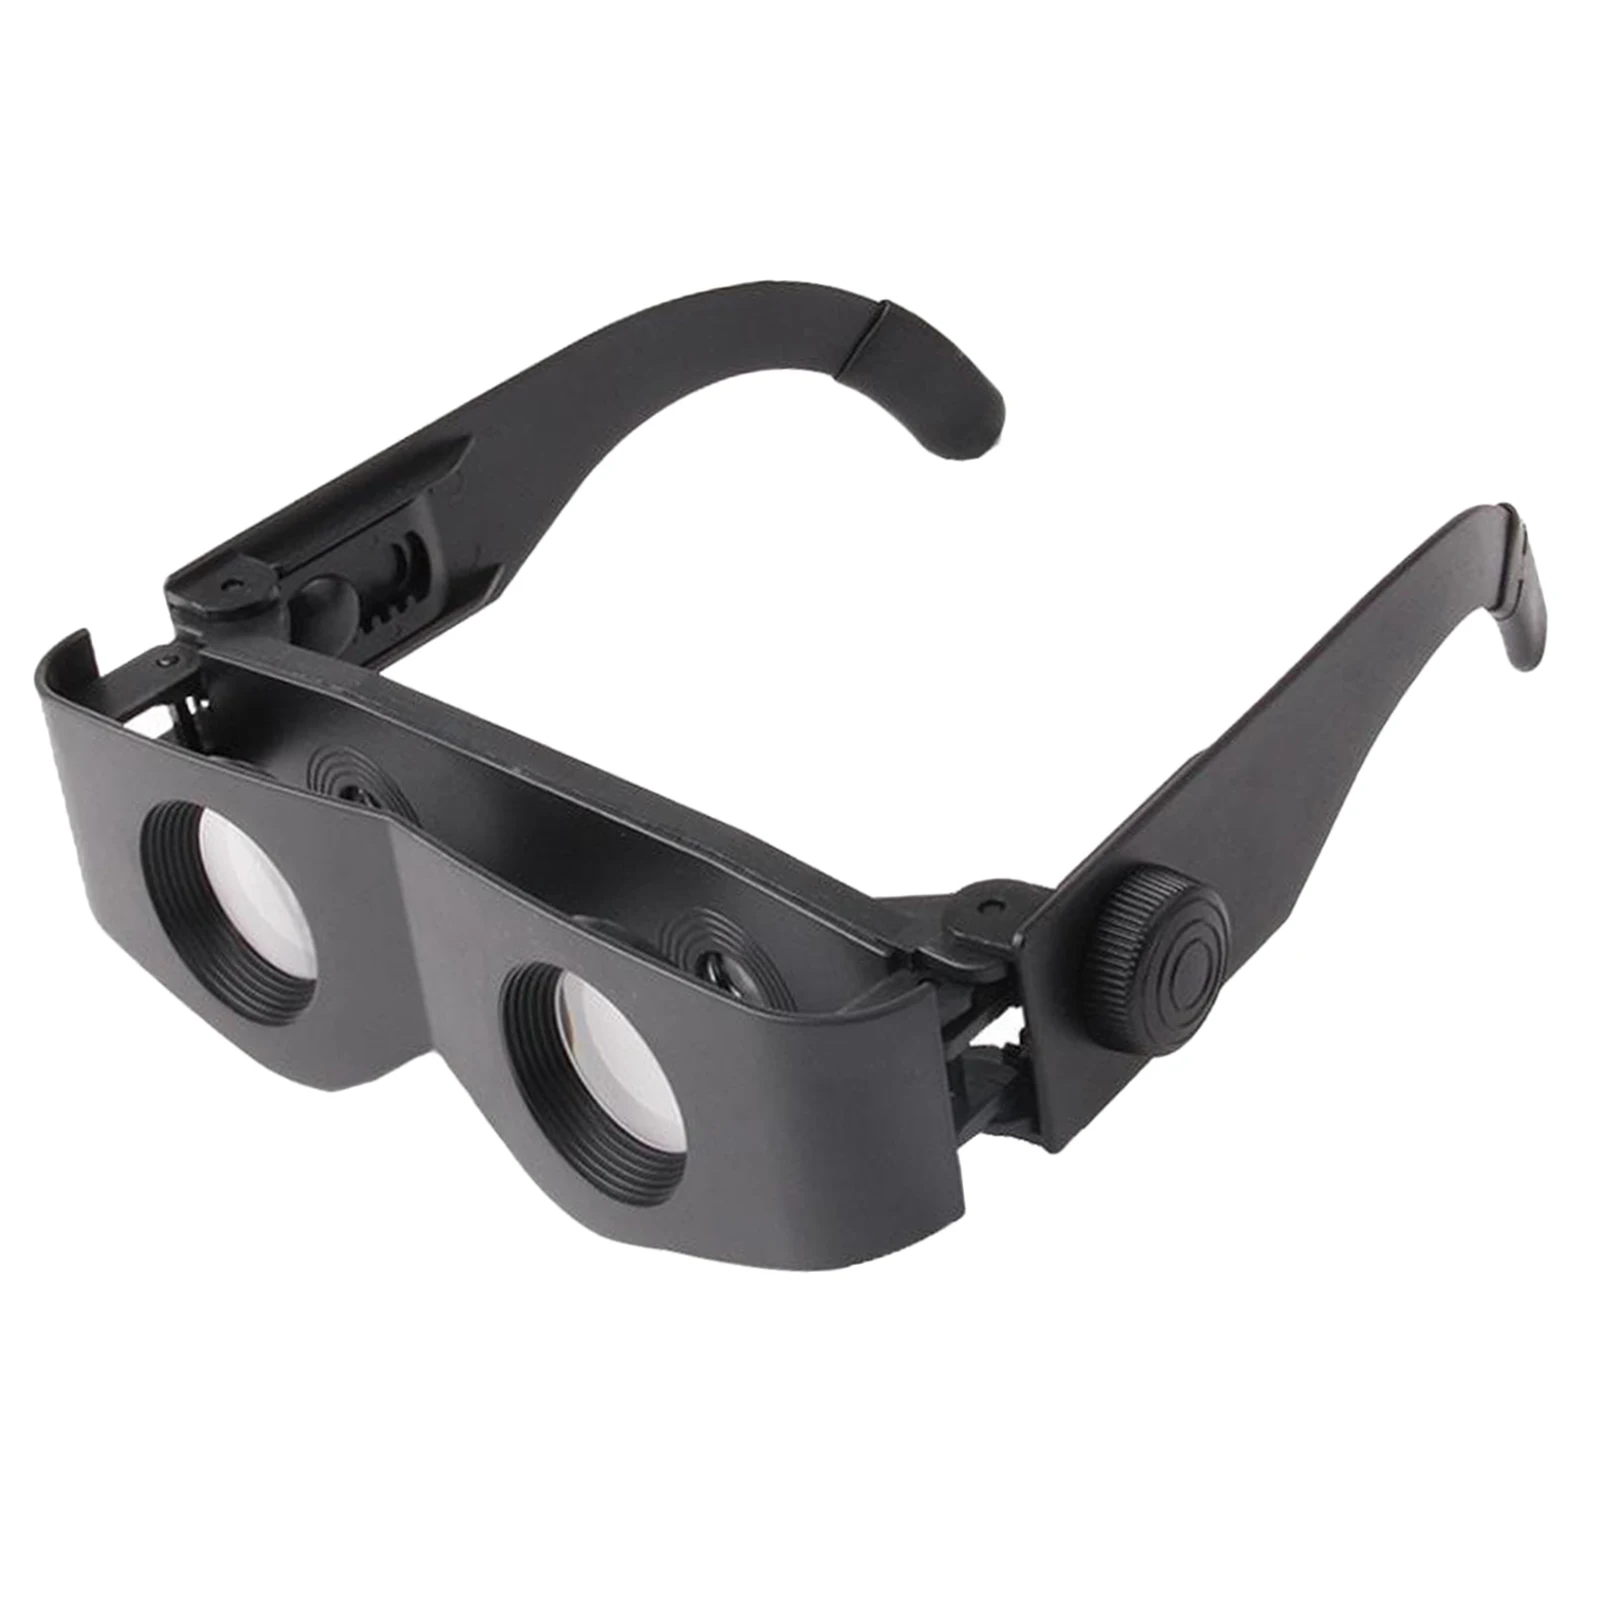 Adjustable Focus Glasses Telescopic Magnifier Binoculars : 300 ~ 400%